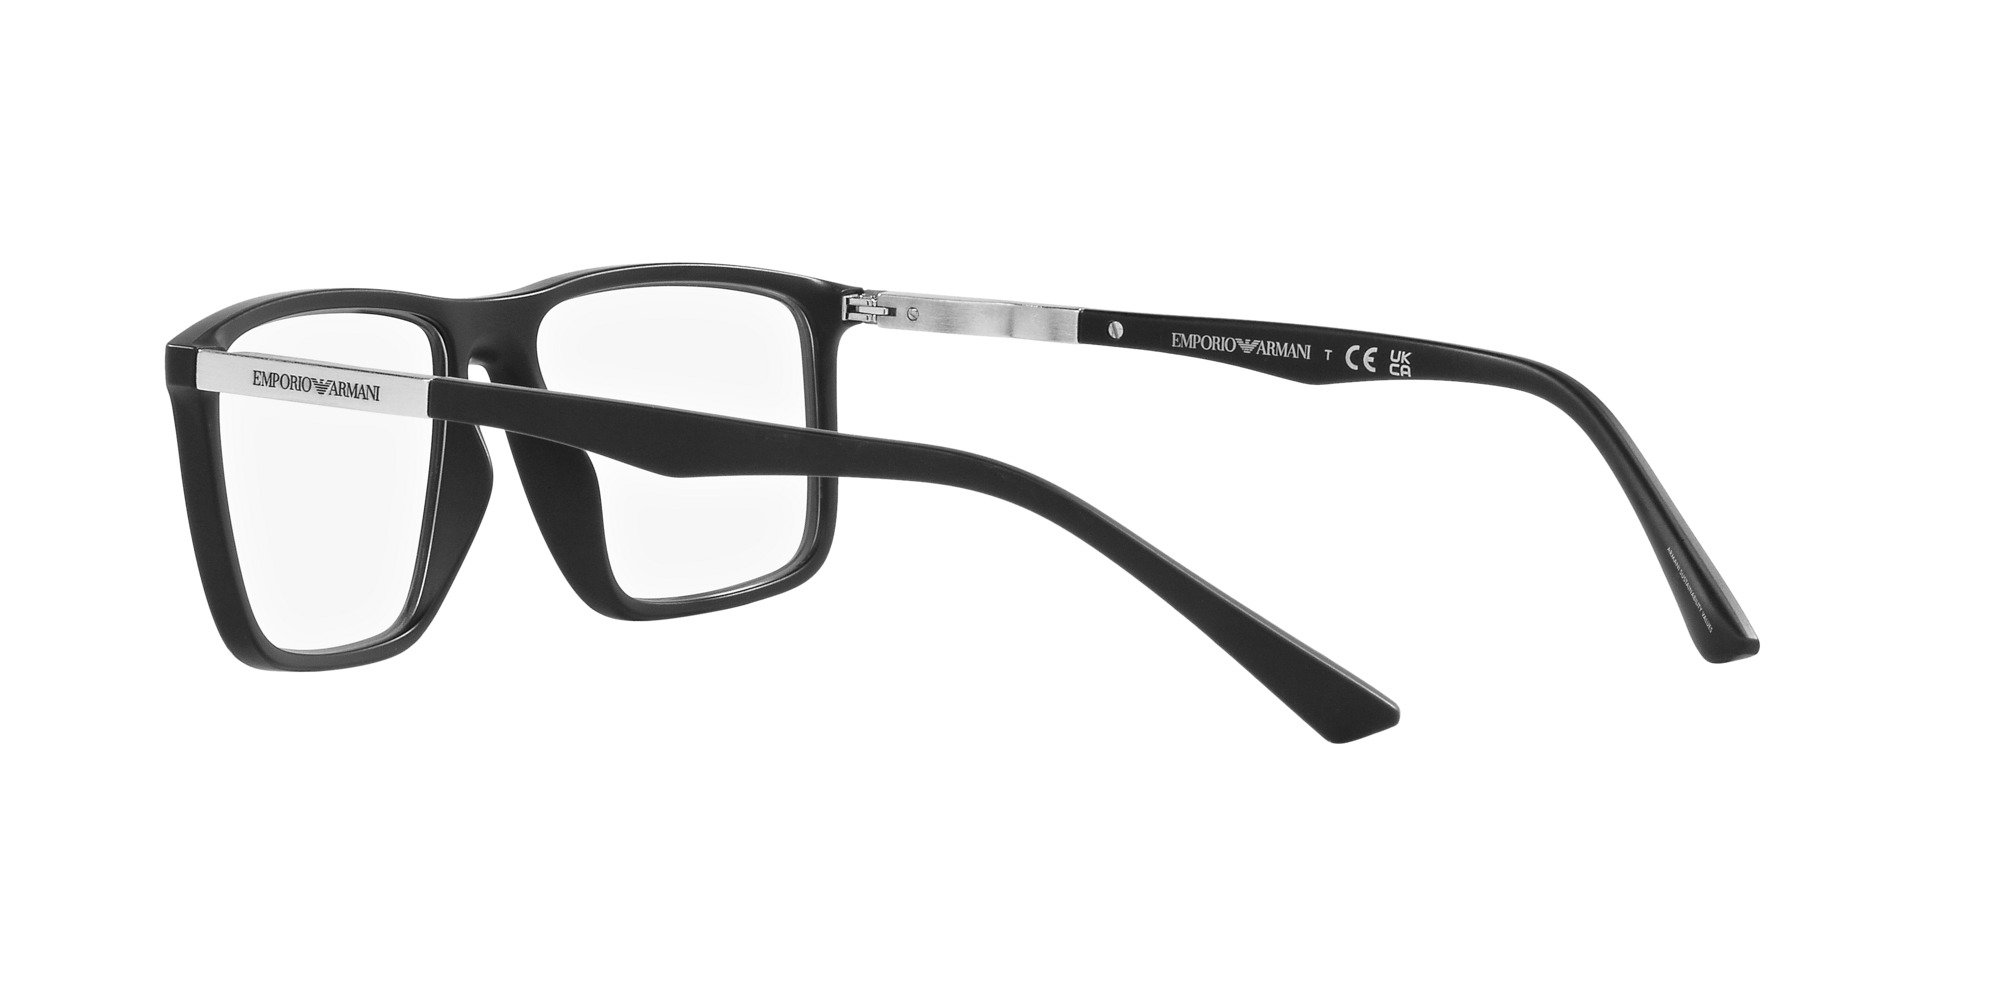 Das Bild zeigt die Korrektionsbrille EA3221 5001 von der Marke Emporio Armani in Schwarz.